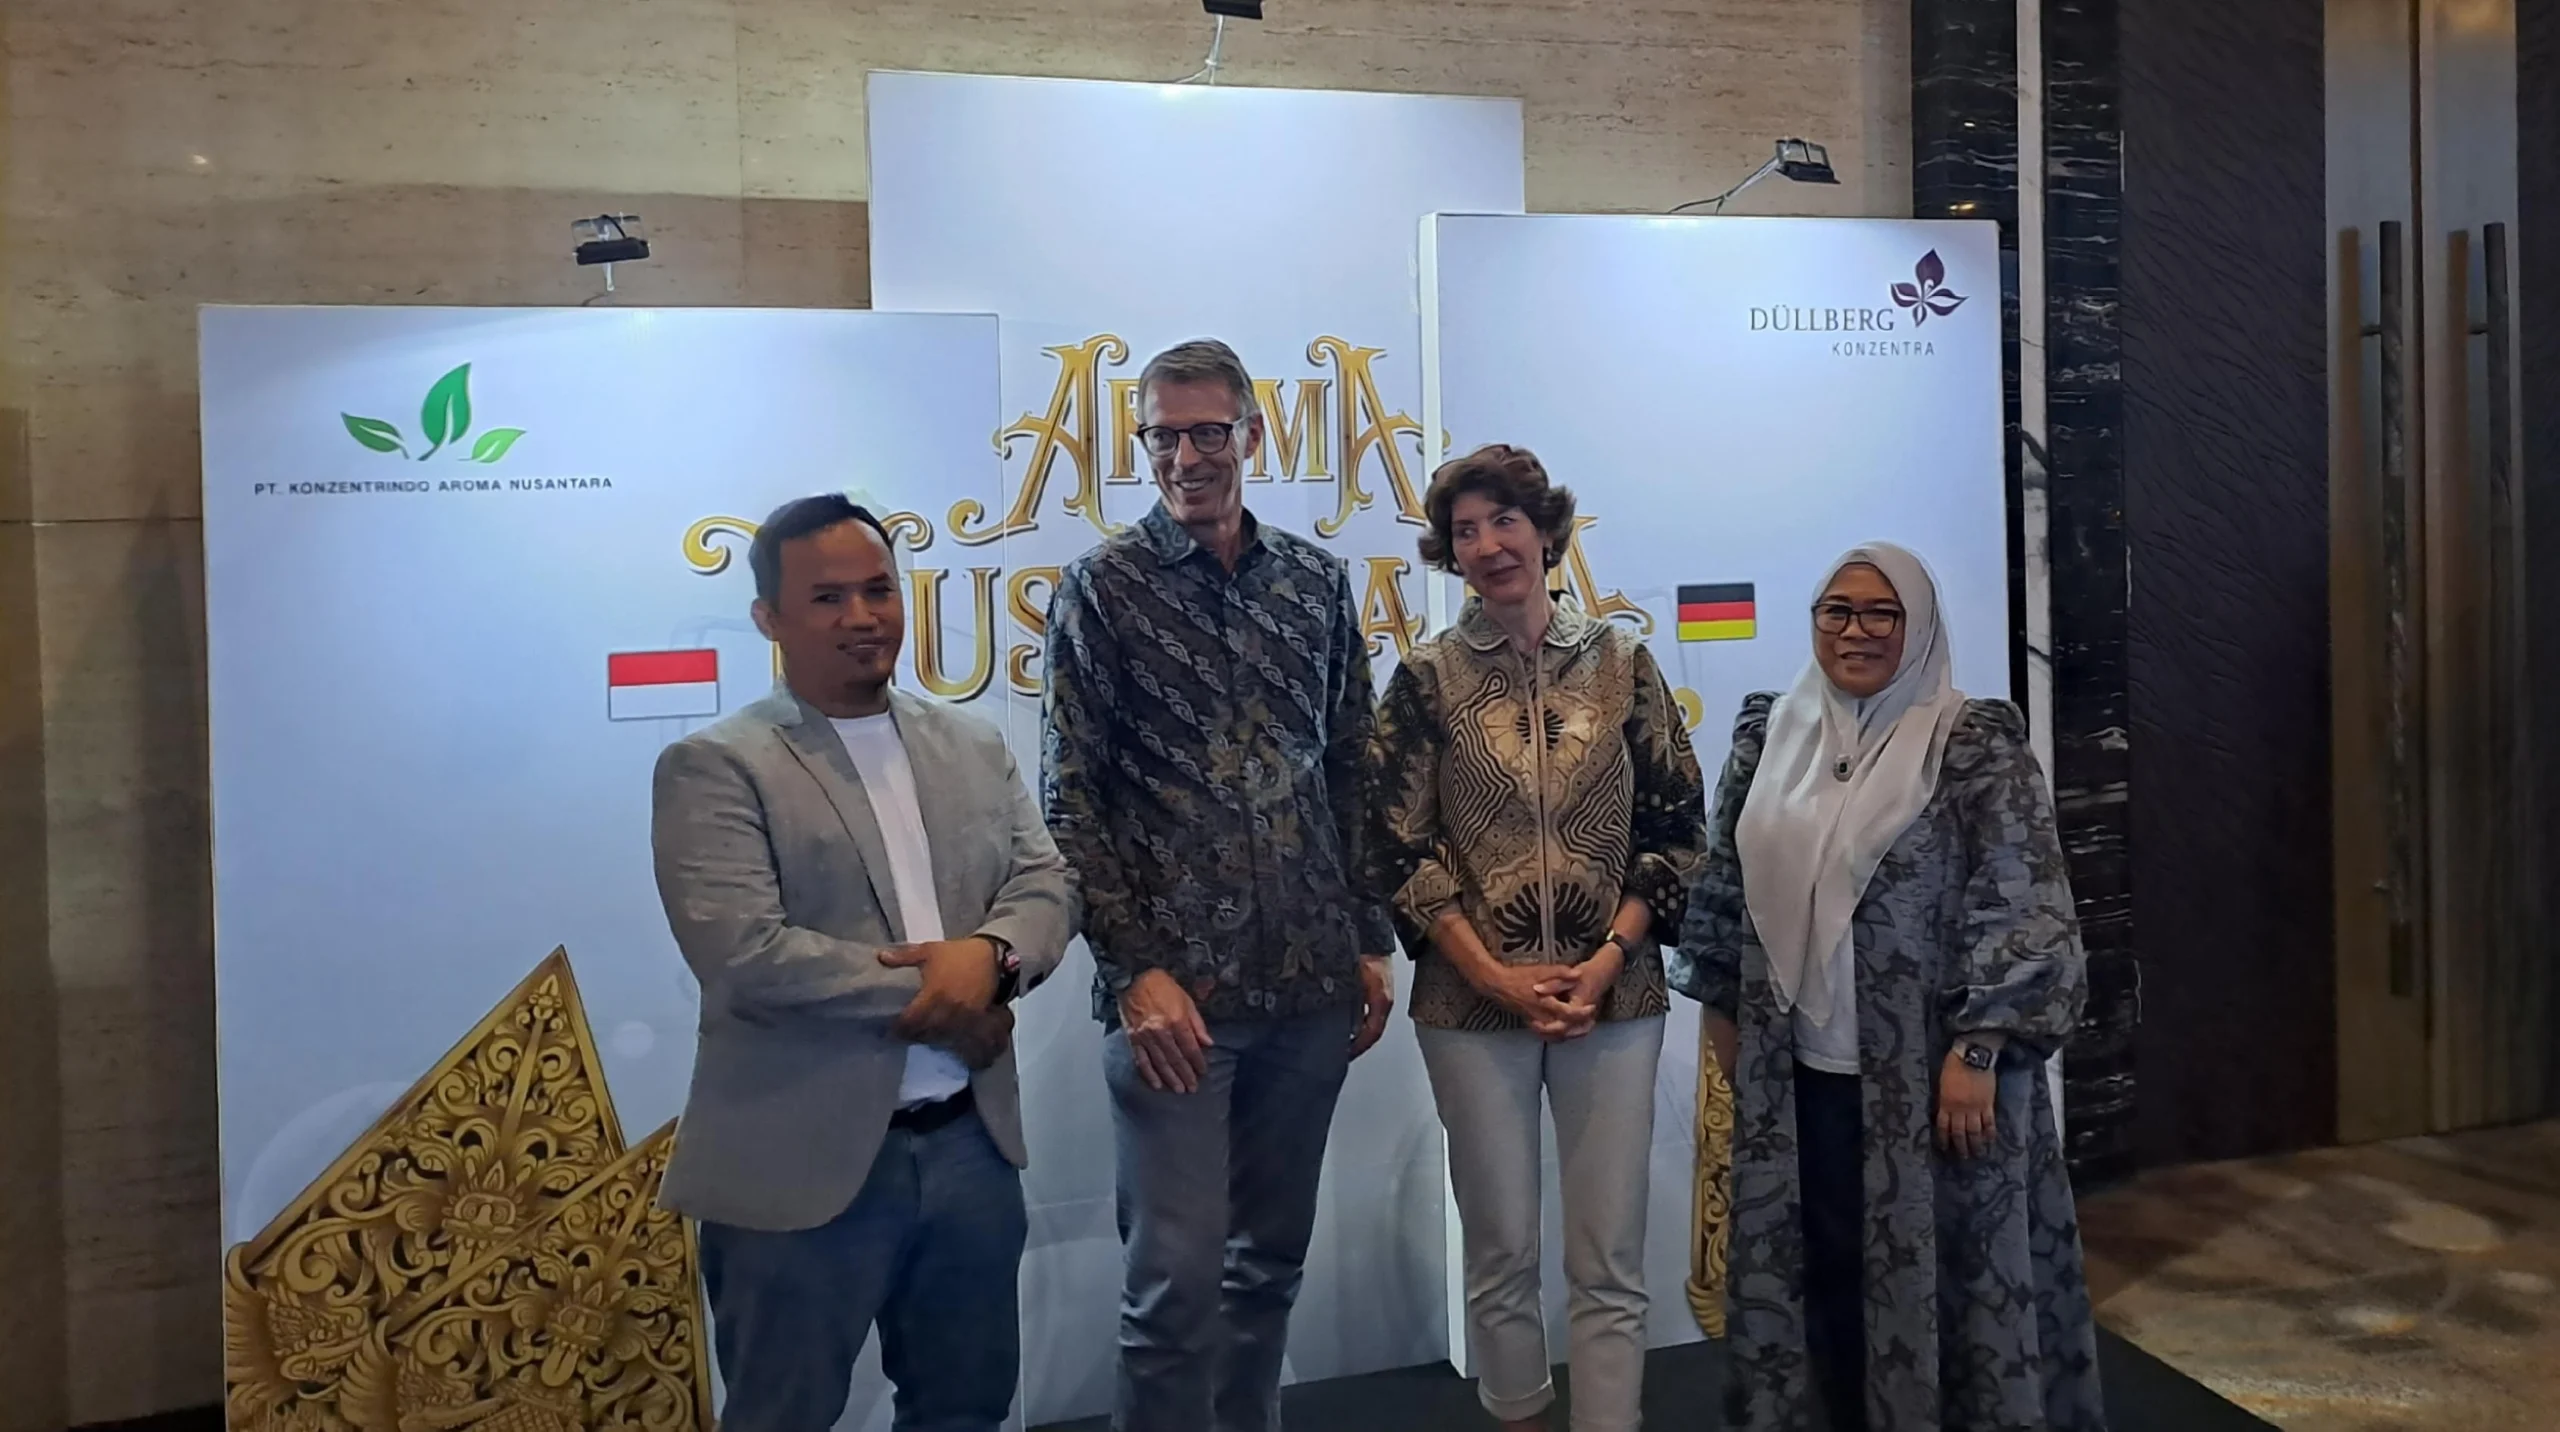 Event “Aroma Nusantara" yang digelar PT KAN Sebagai Distributor Resmi Bibit Parfum Düllberg.